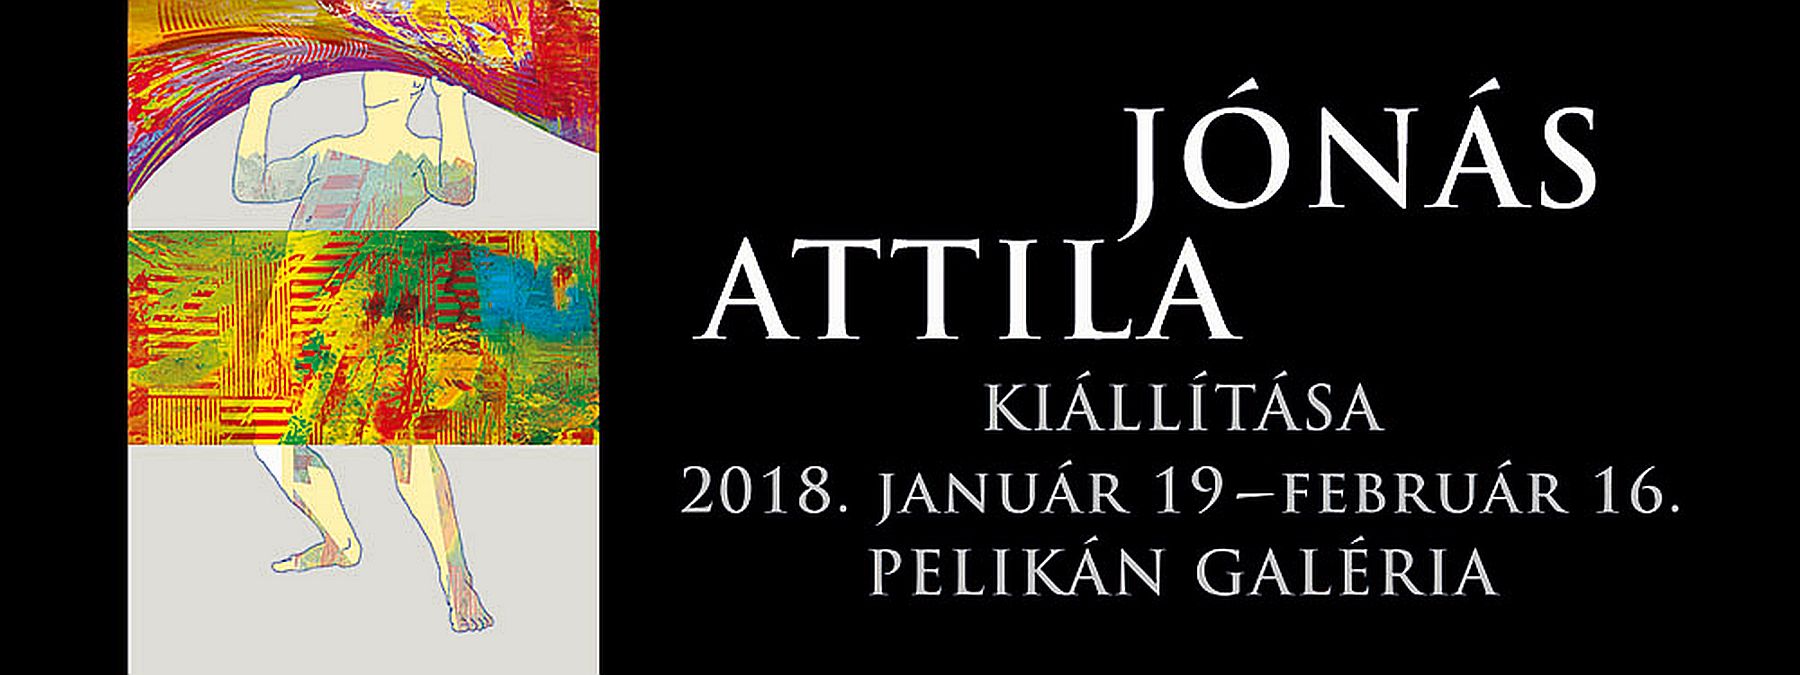 Jónás Attila kiállításának megnyitója a Pelikán Galériában